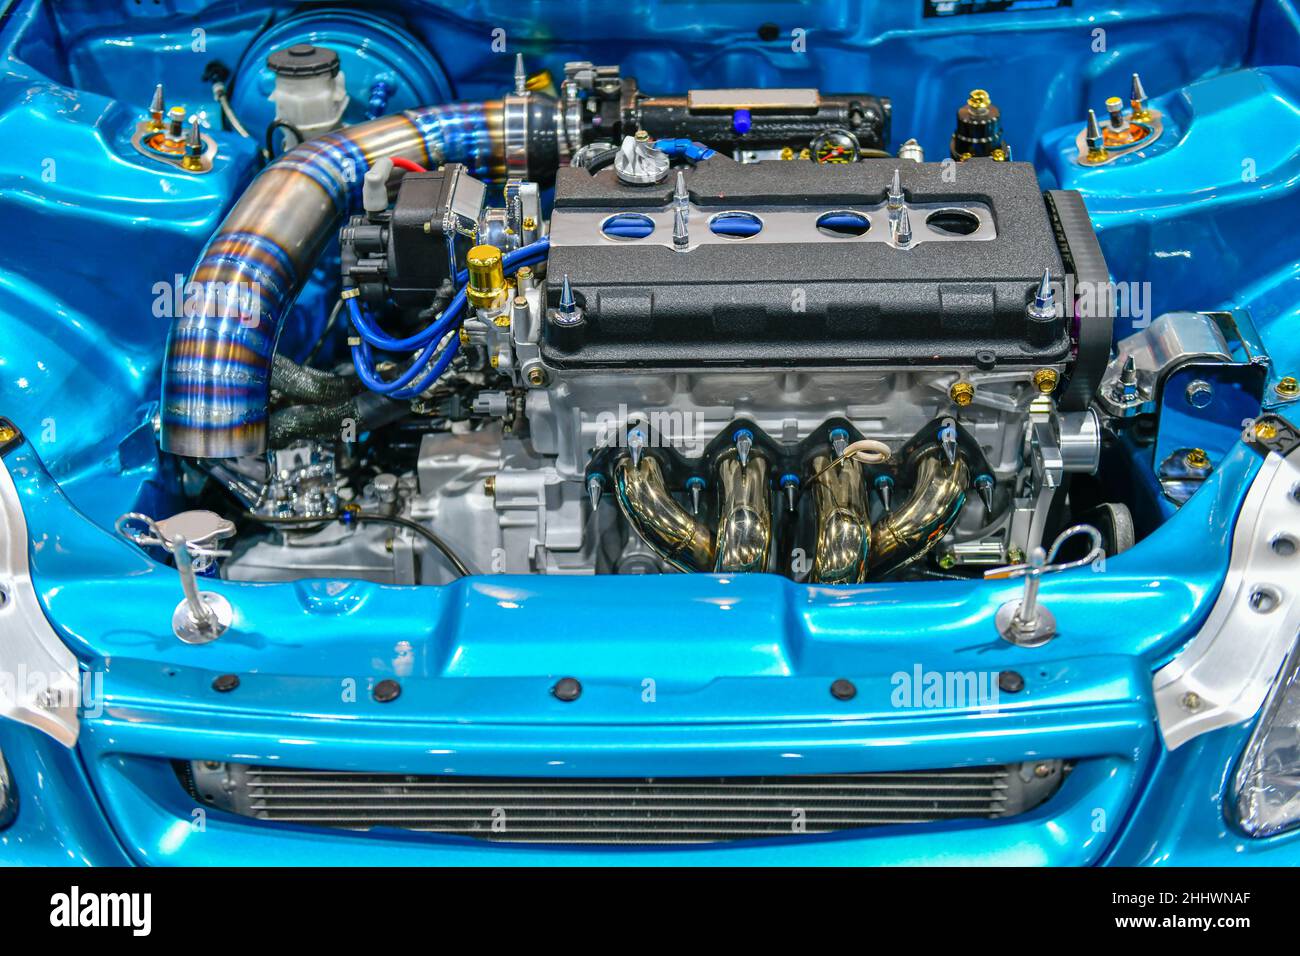 Detalles del motor azul del coche. Modificación del motor turbo Foto de stock